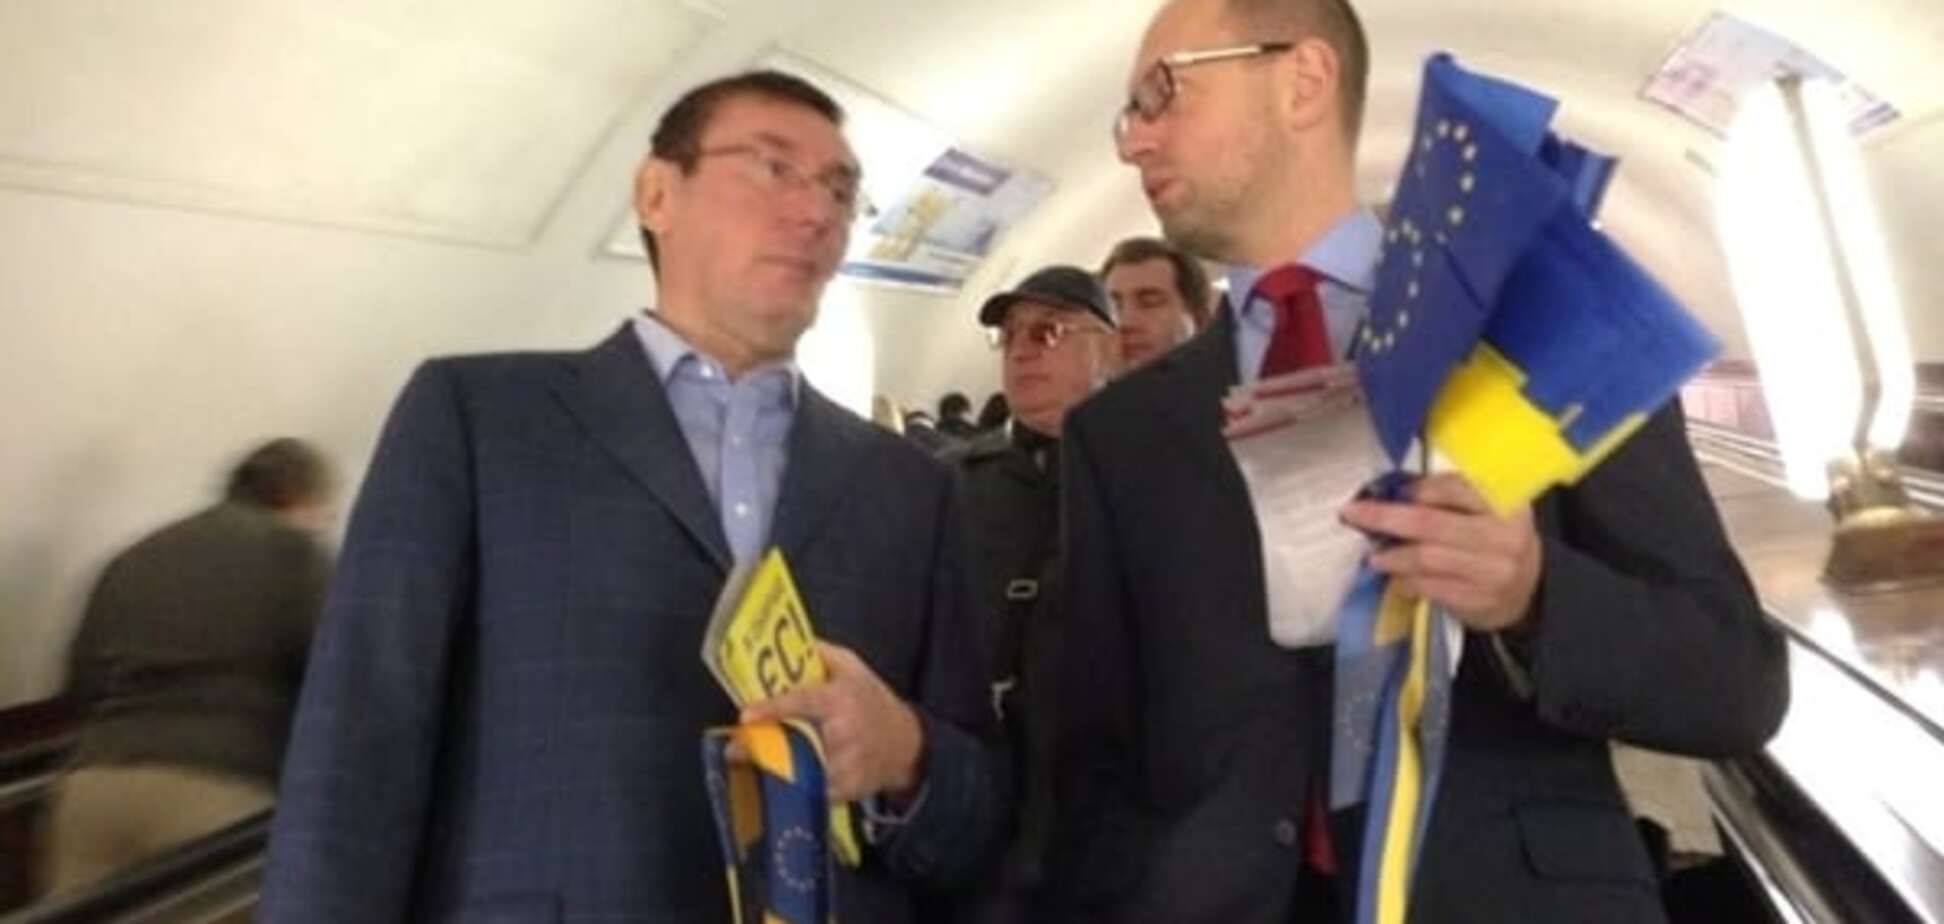 Луценко возмутили слова Яценюка о 'коррупции в Раде' и 'безвизовом пакете'